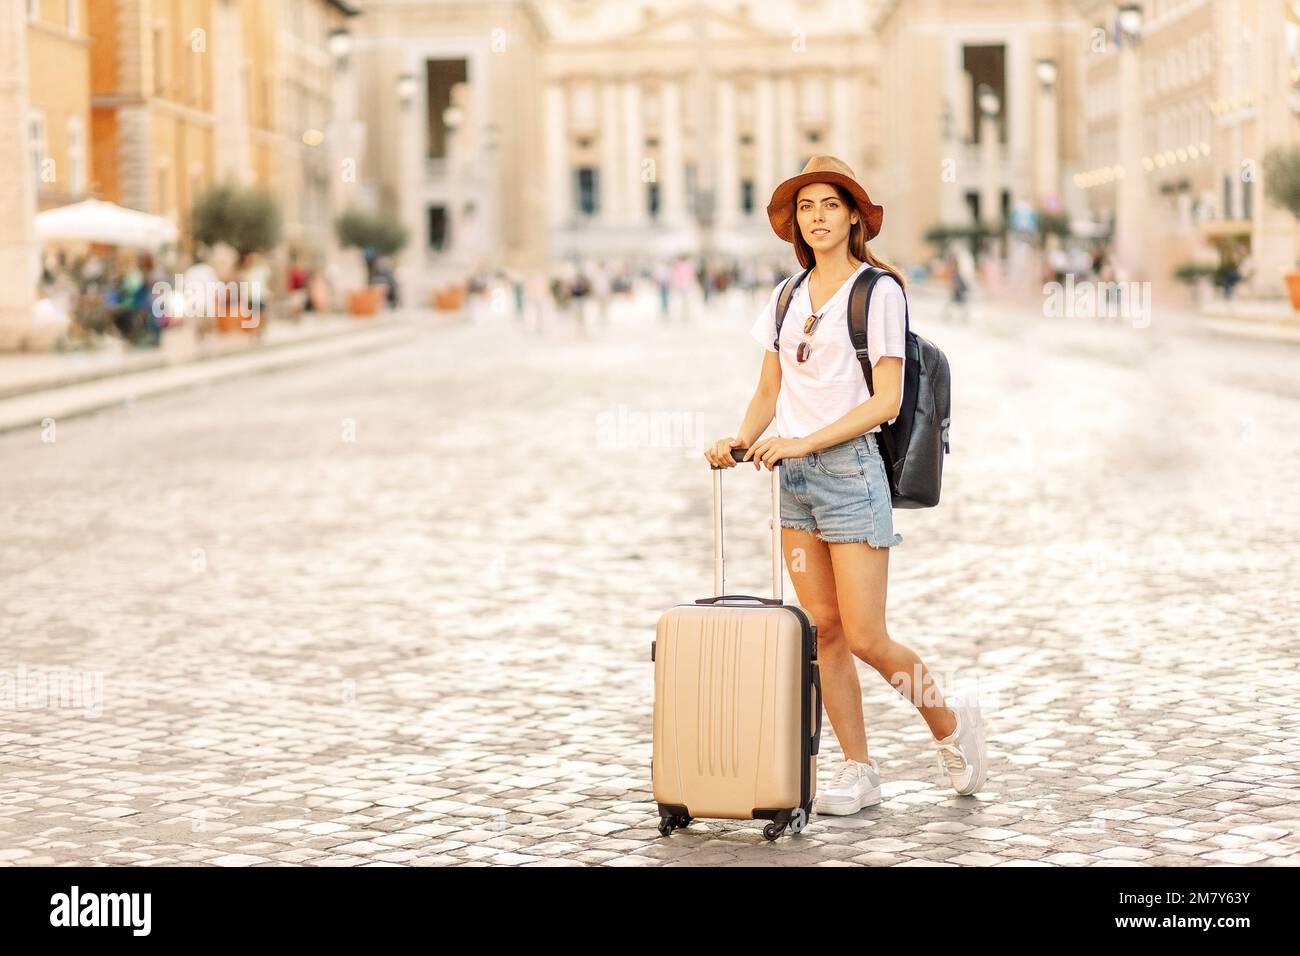 Portrait d'une femme voyageur portant un chapeau avec un sac à dos et regarde la place de la ville. Rome, Italie. Vacances. Tourisme Banque D'Images